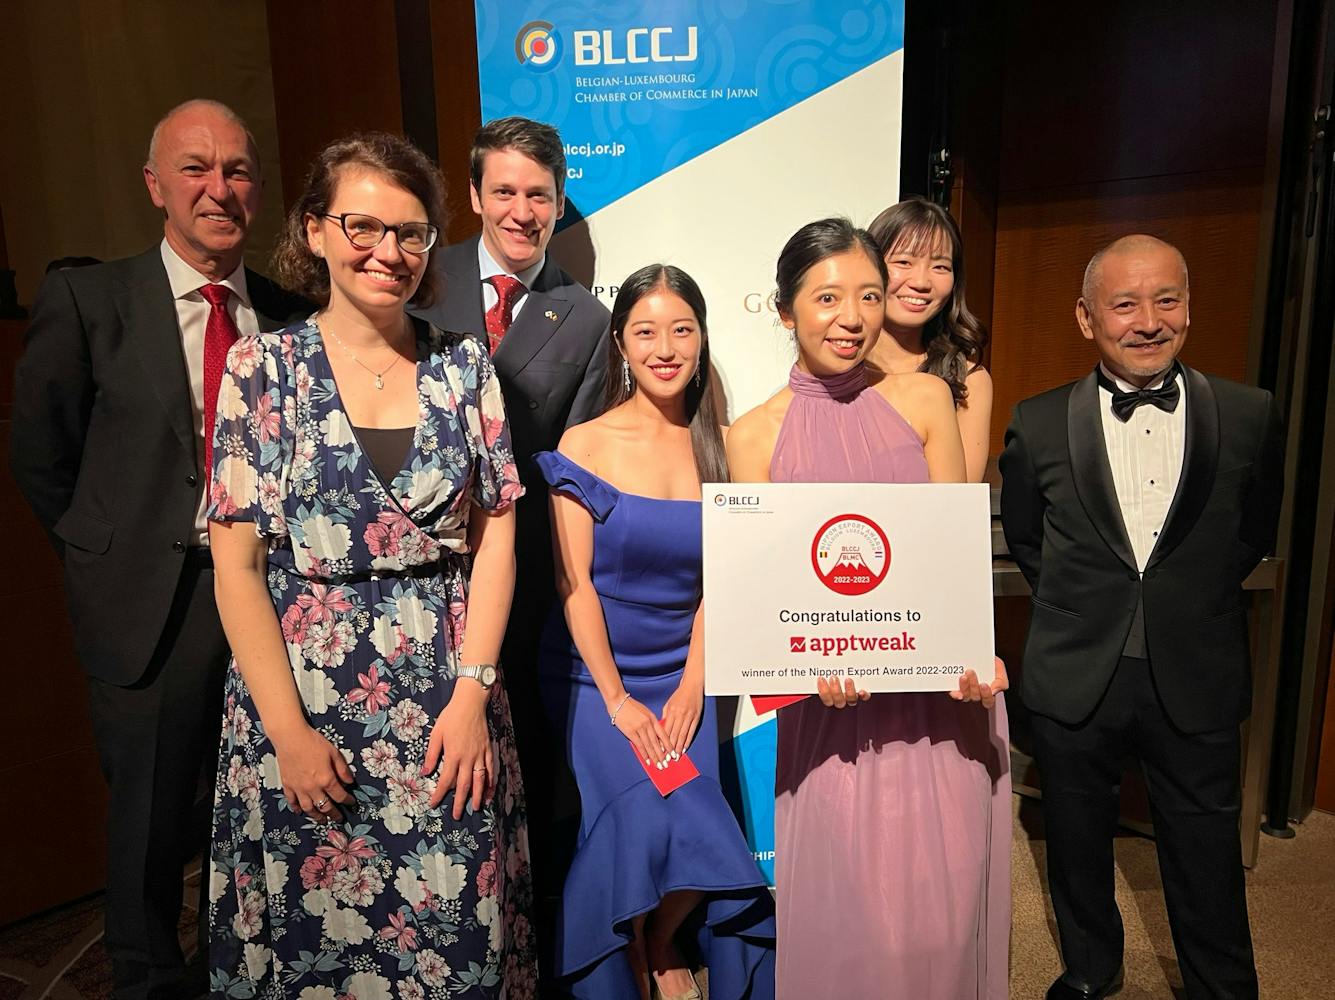 AppTweak announced as the Nippon Export Award winner at the BLCCJ Gala 2022